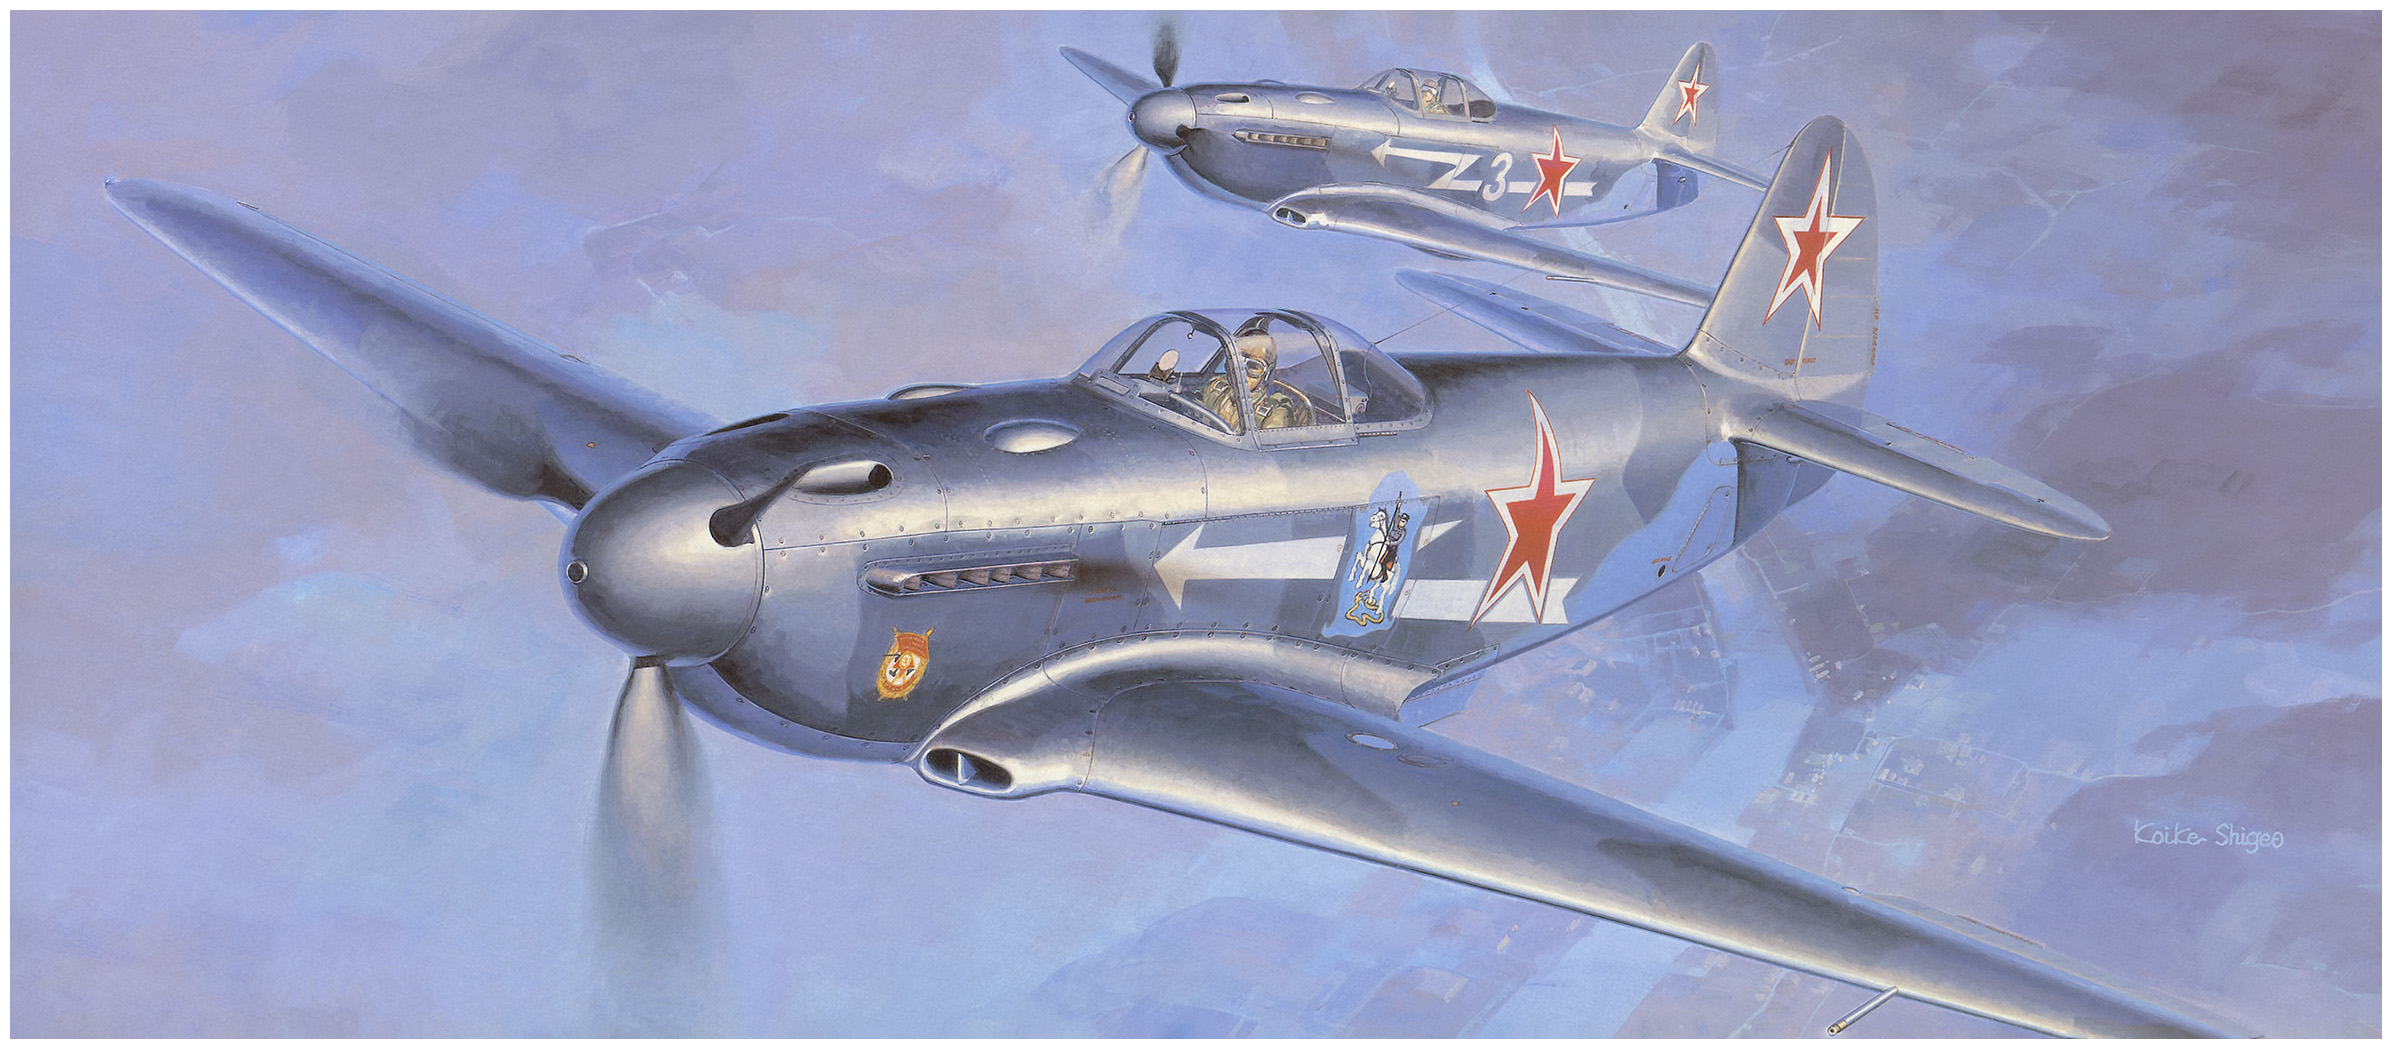 рисунок Як-3